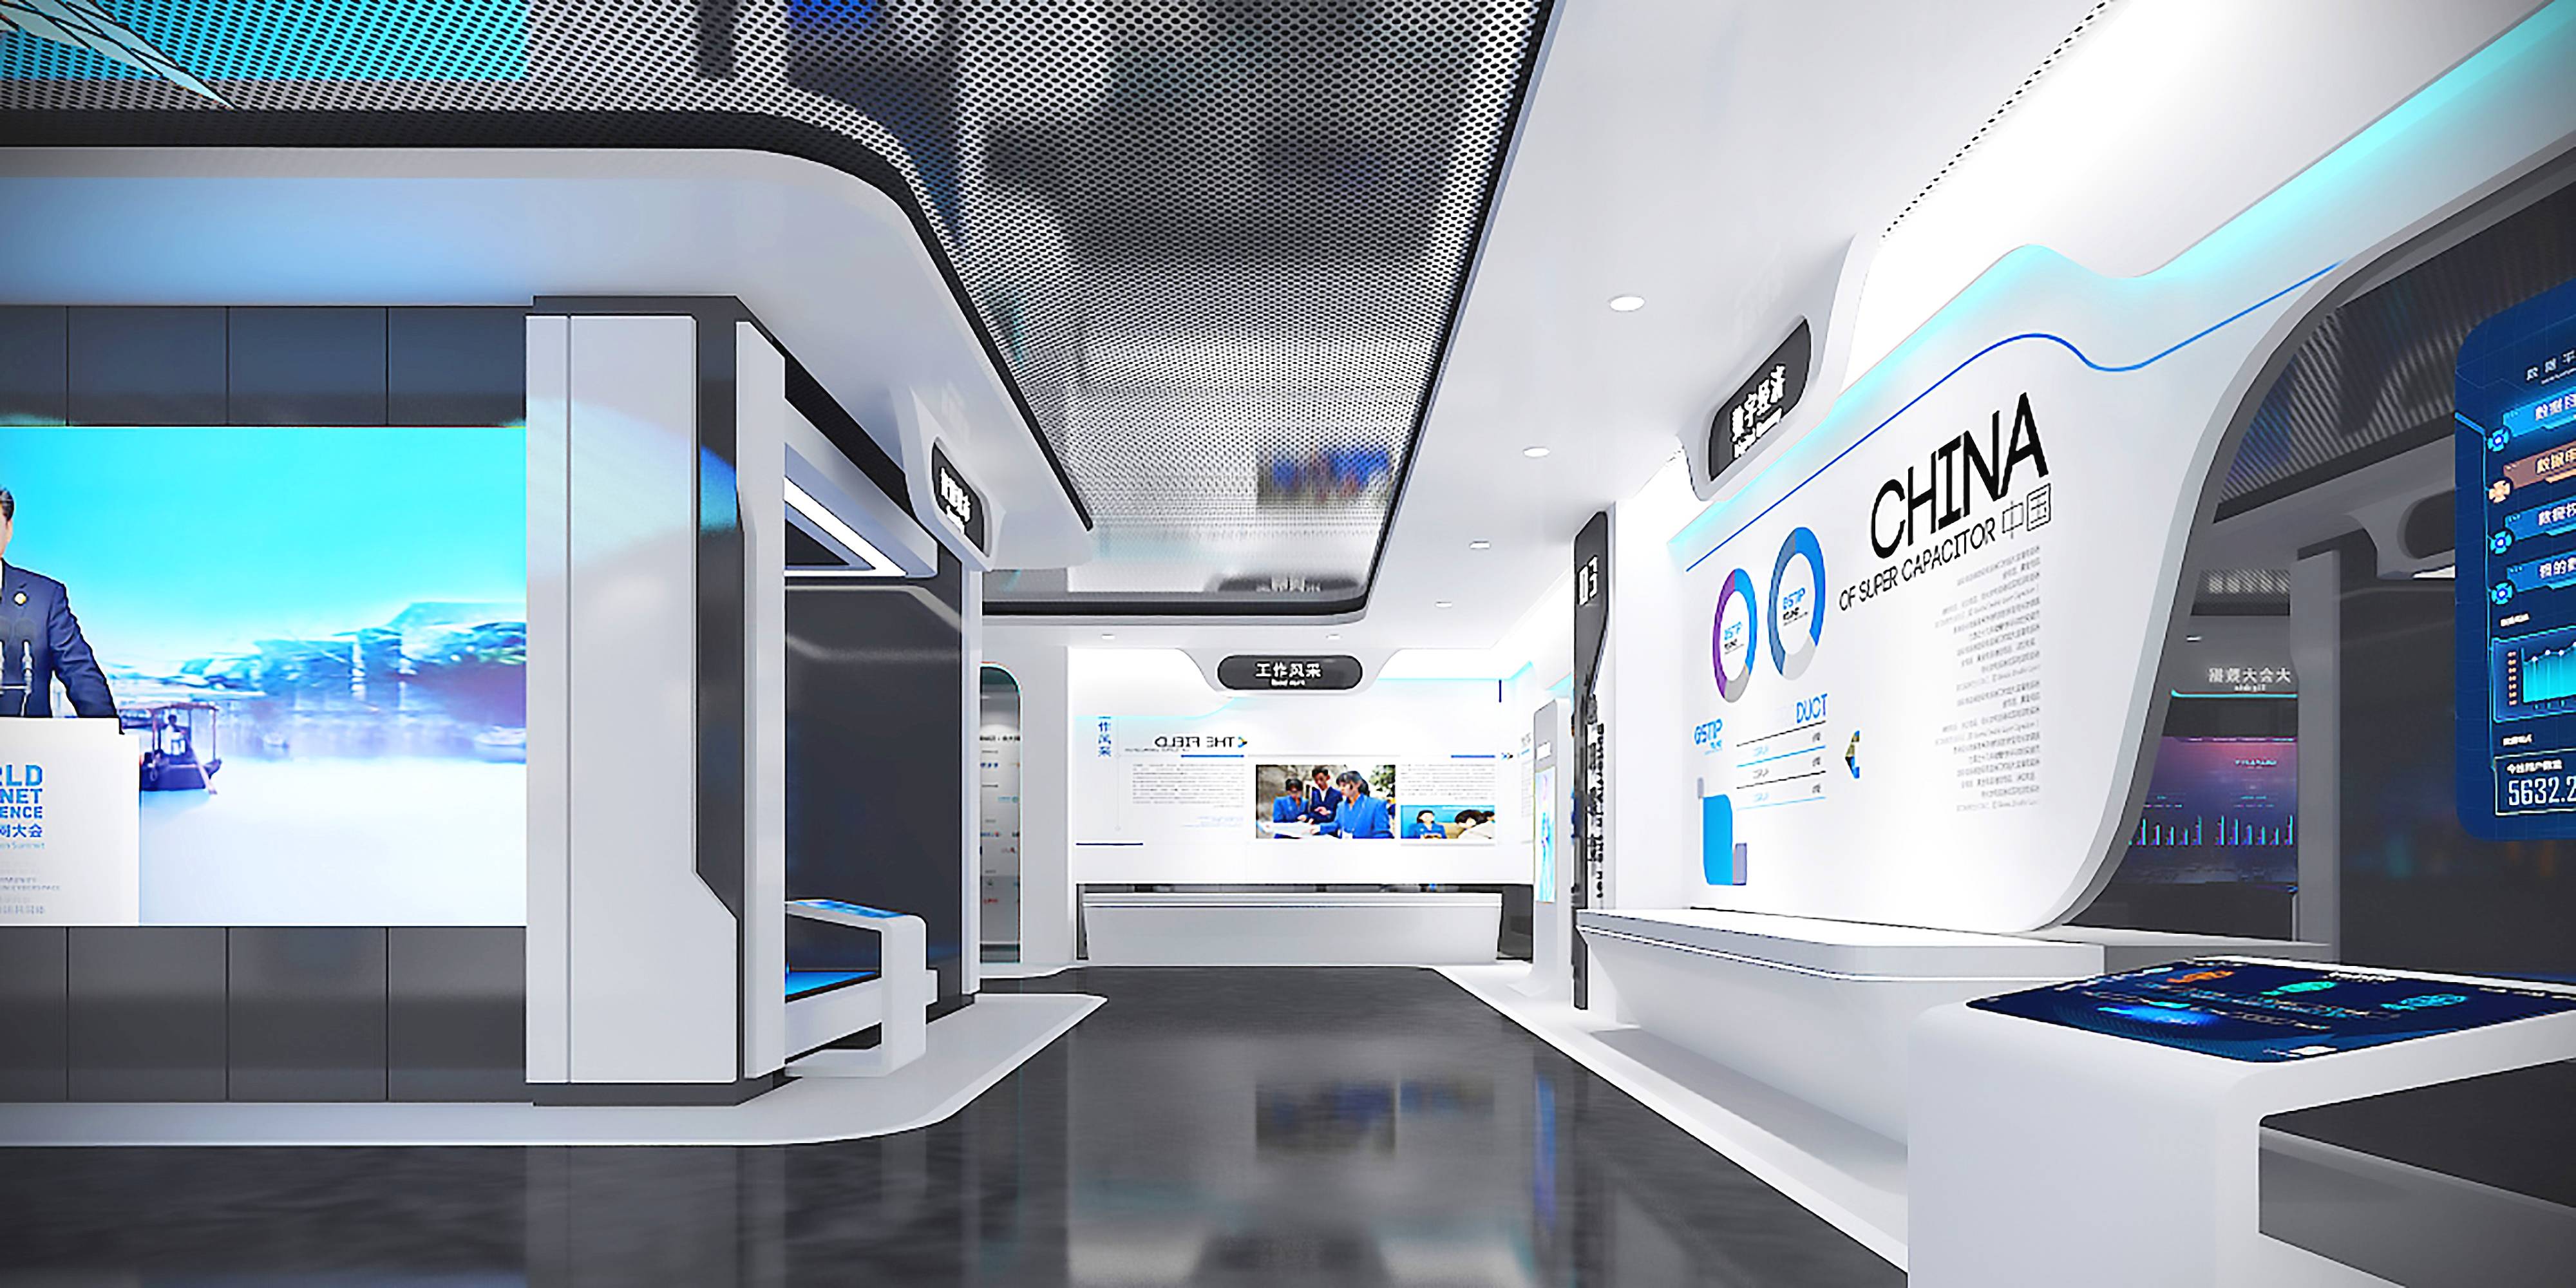 这是一张现代化展厅的图片，内部装饰现代简洁，以白蓝色调为主，展示屏幕和互动设备布置其中。